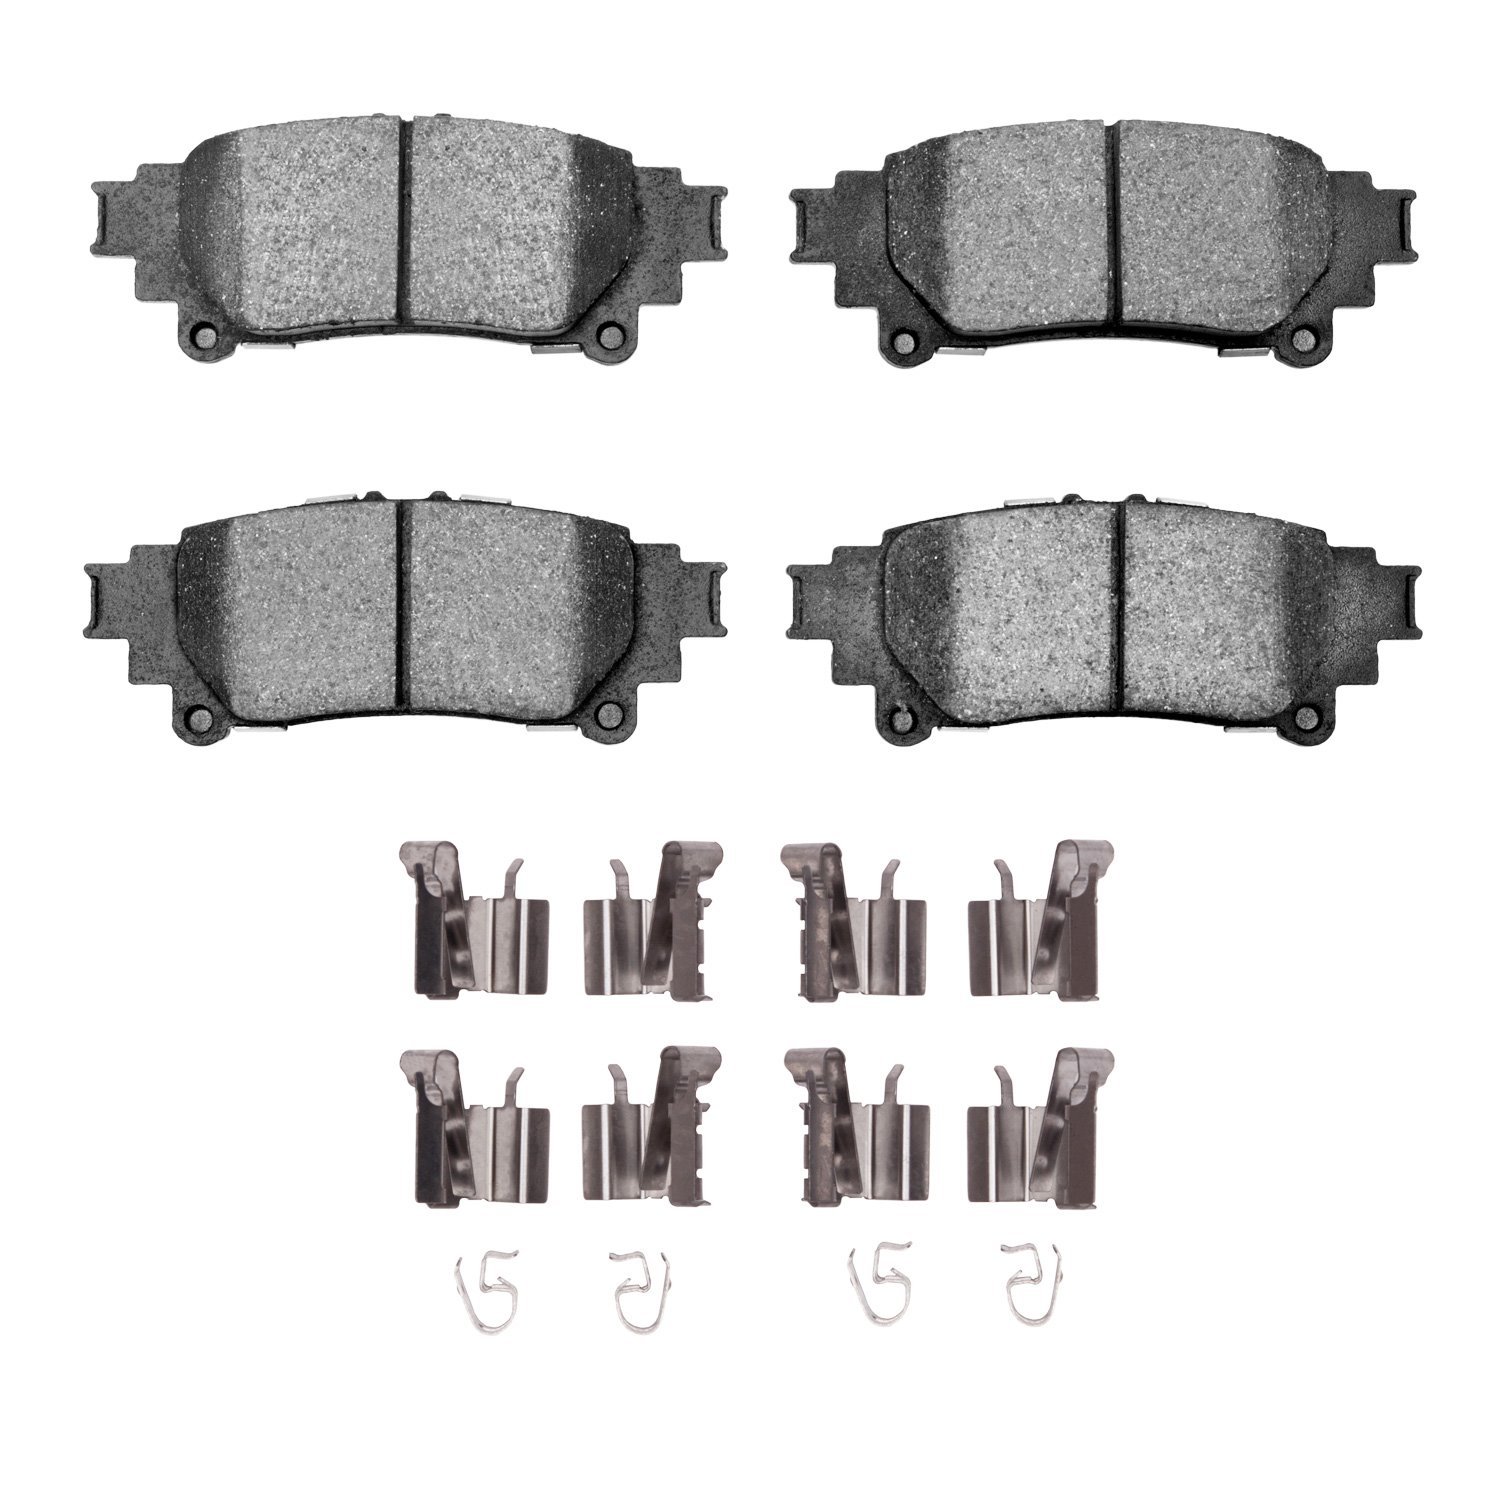 1310-1391-01 3000-Series Ceramic Brake Pads & Hardware Kit, 2010-2020 Lexus/Toyota/Scion, Position: Rear